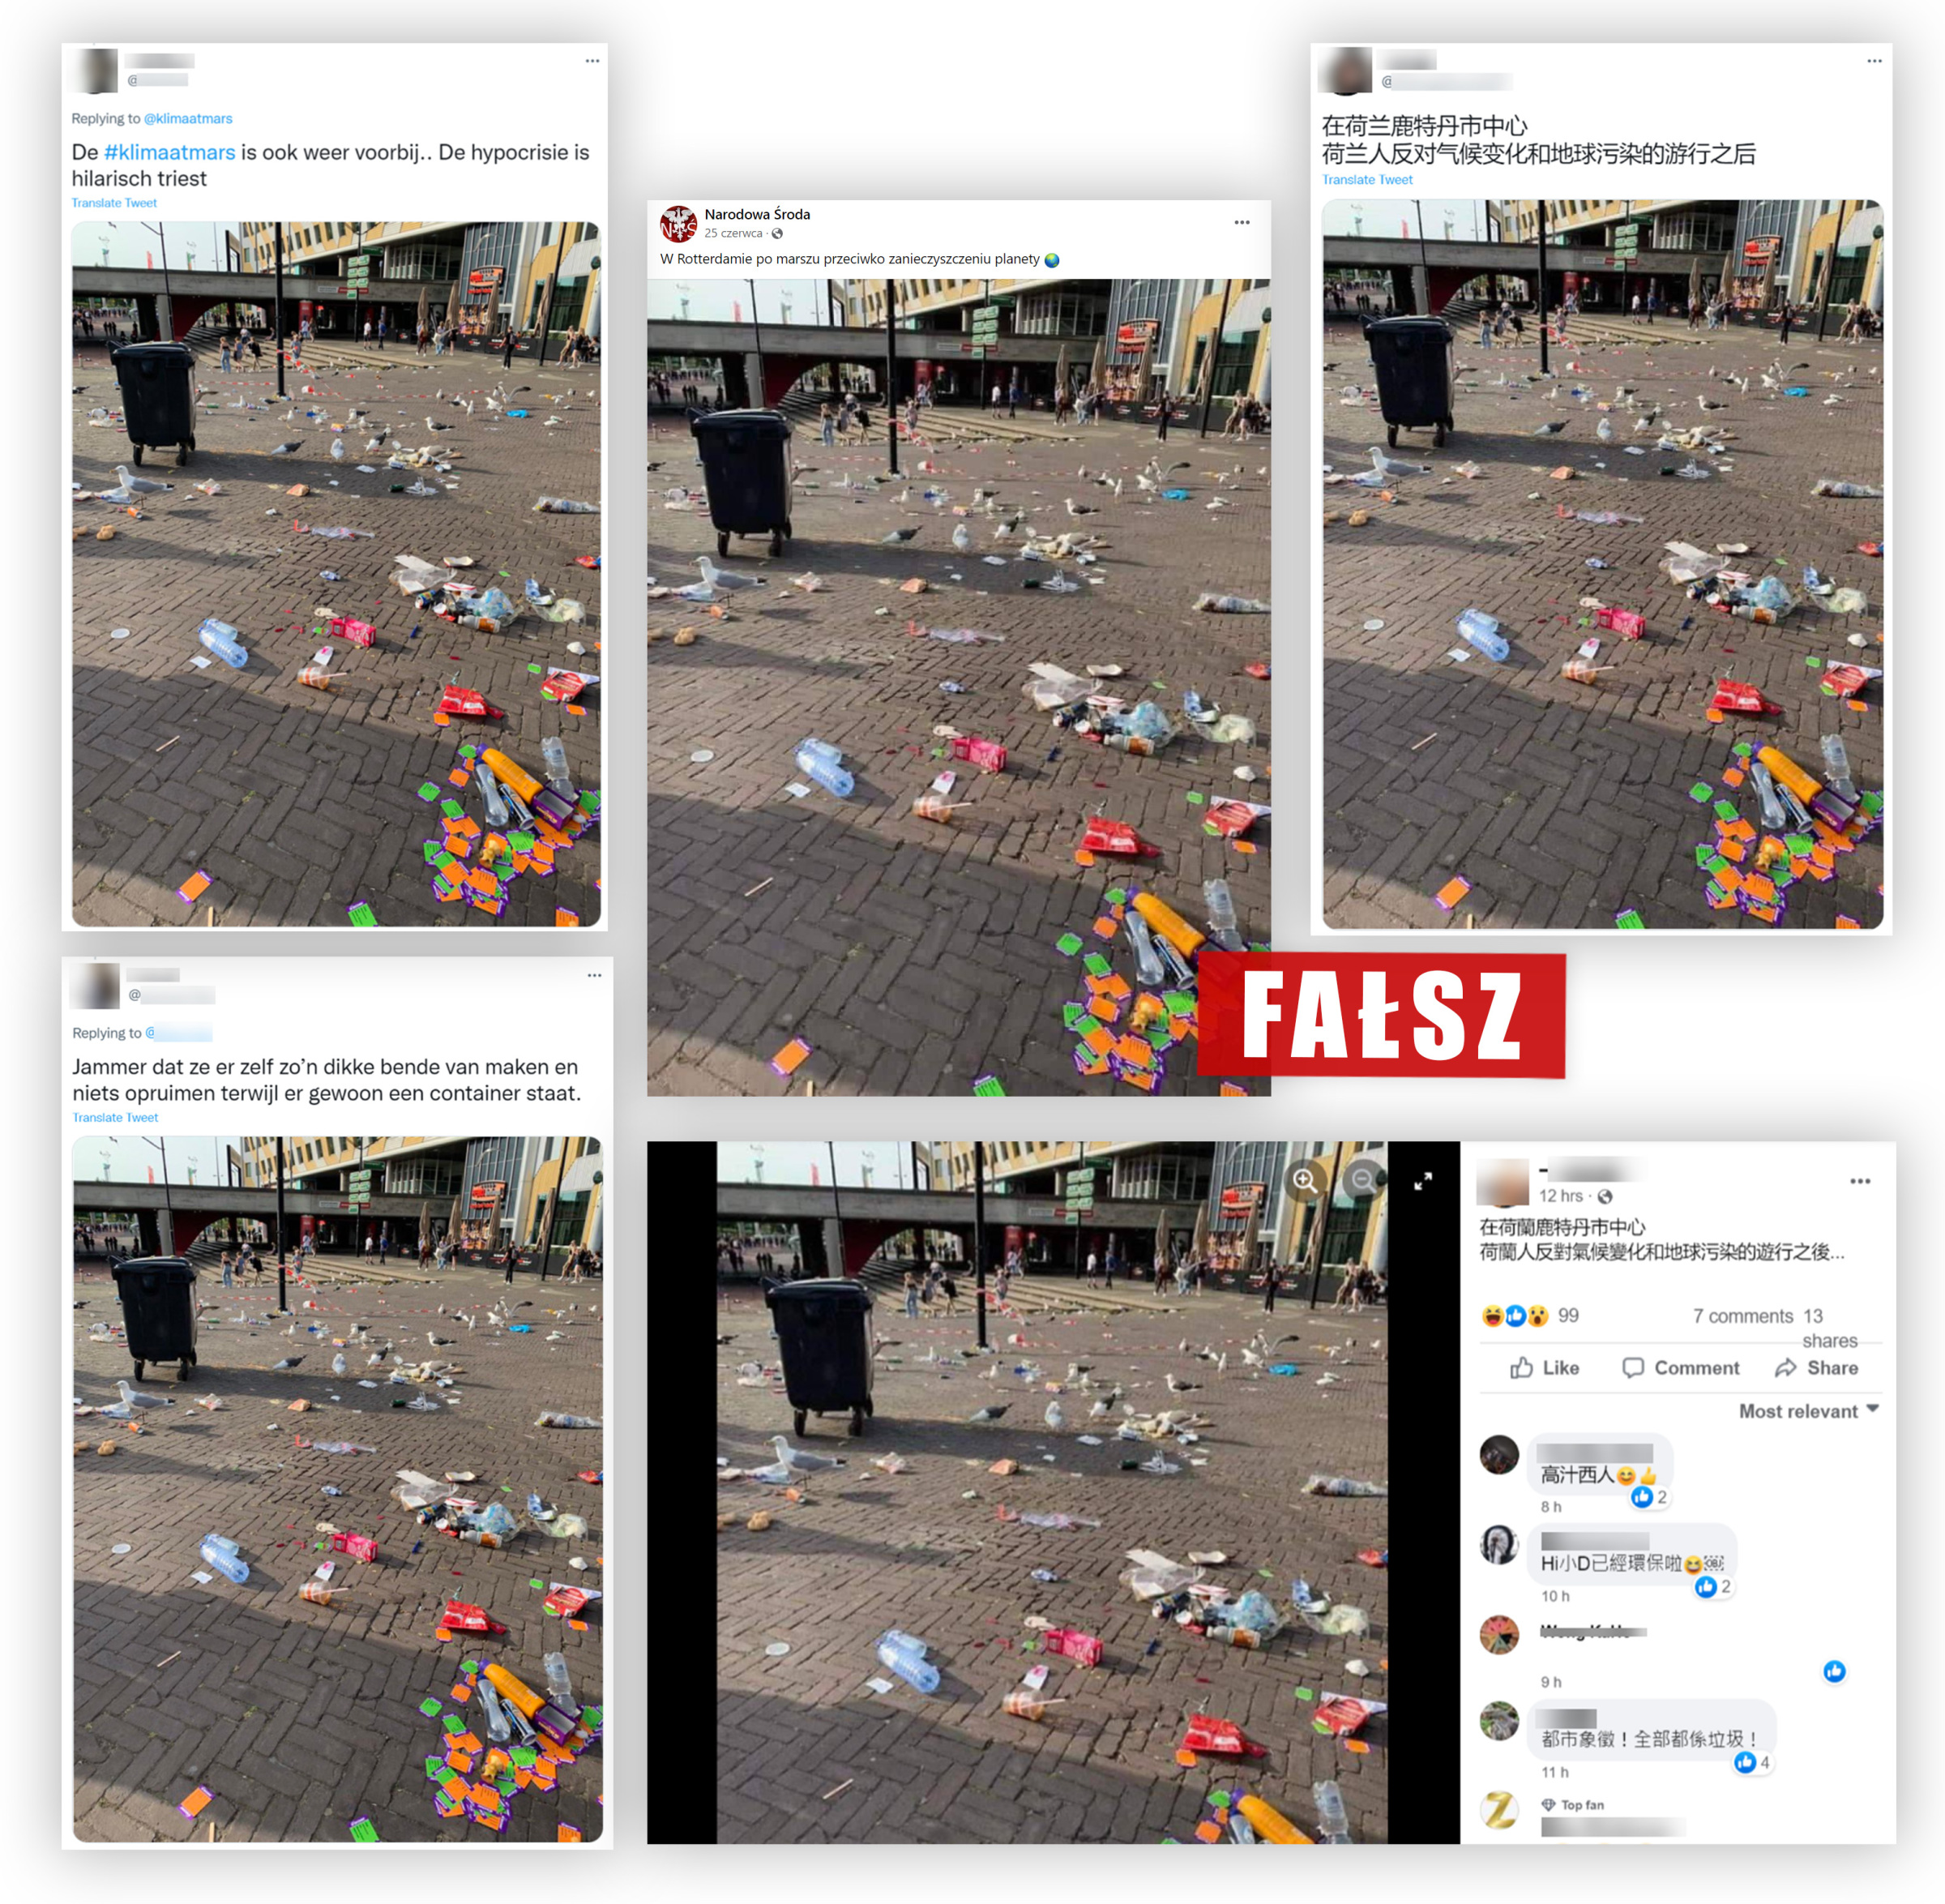 Wpisy z Twittera i Facebooka rzekomo pokazujące śmieci zostawione przez uczestników marszu w obronie klimatu w Rotterdamie